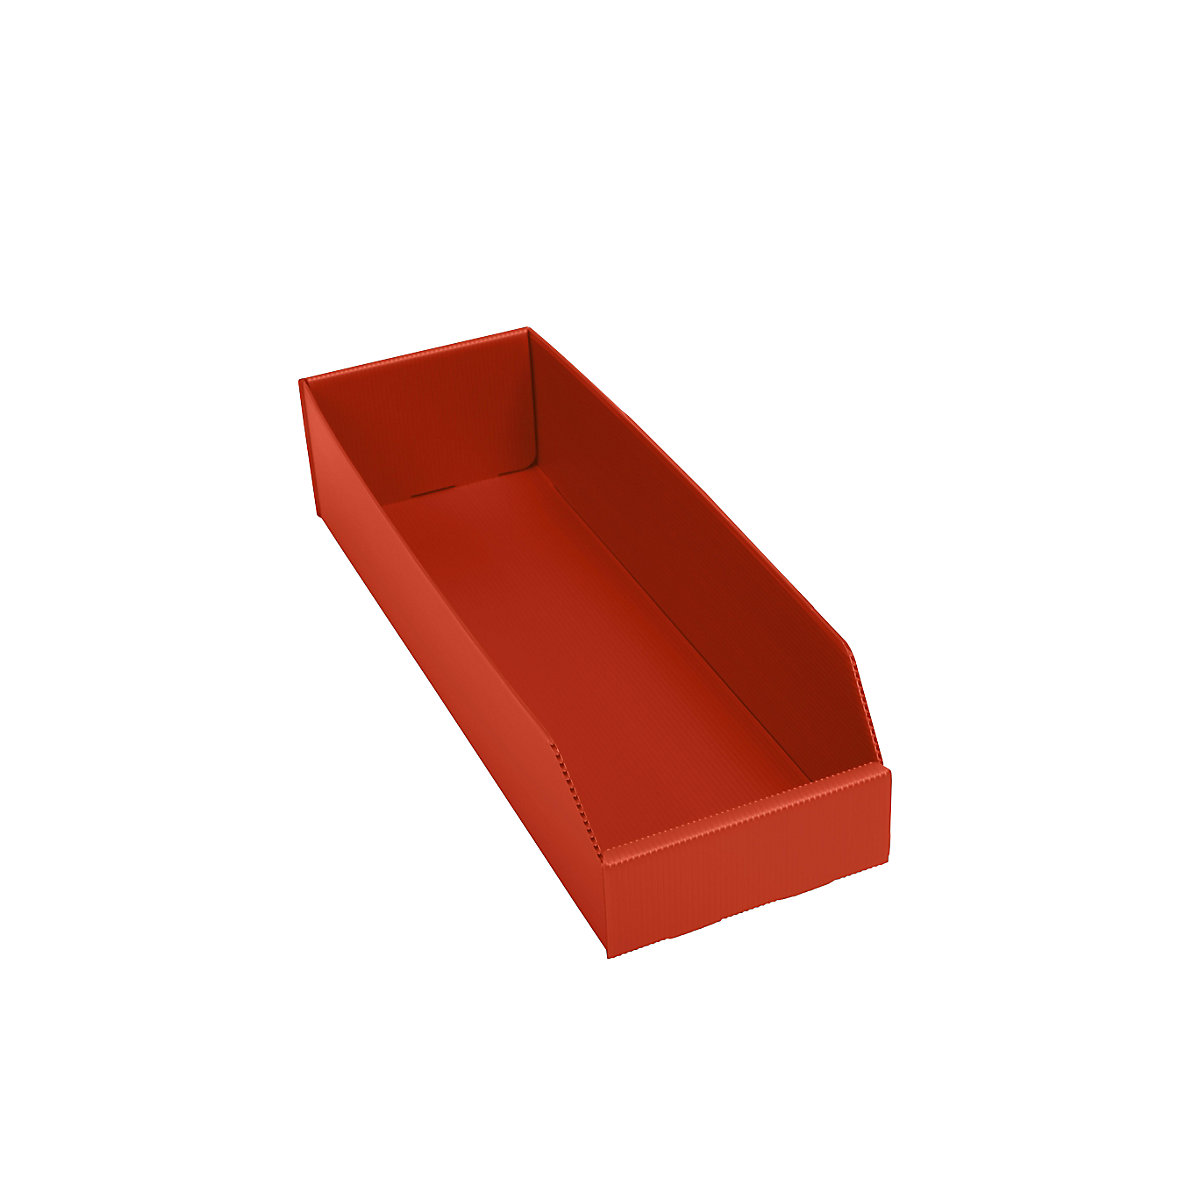 Plastová regálová přepravka, skládací, d x š x v 450 x 150 x 100 mm, červená, bal.j. 25 ks-3